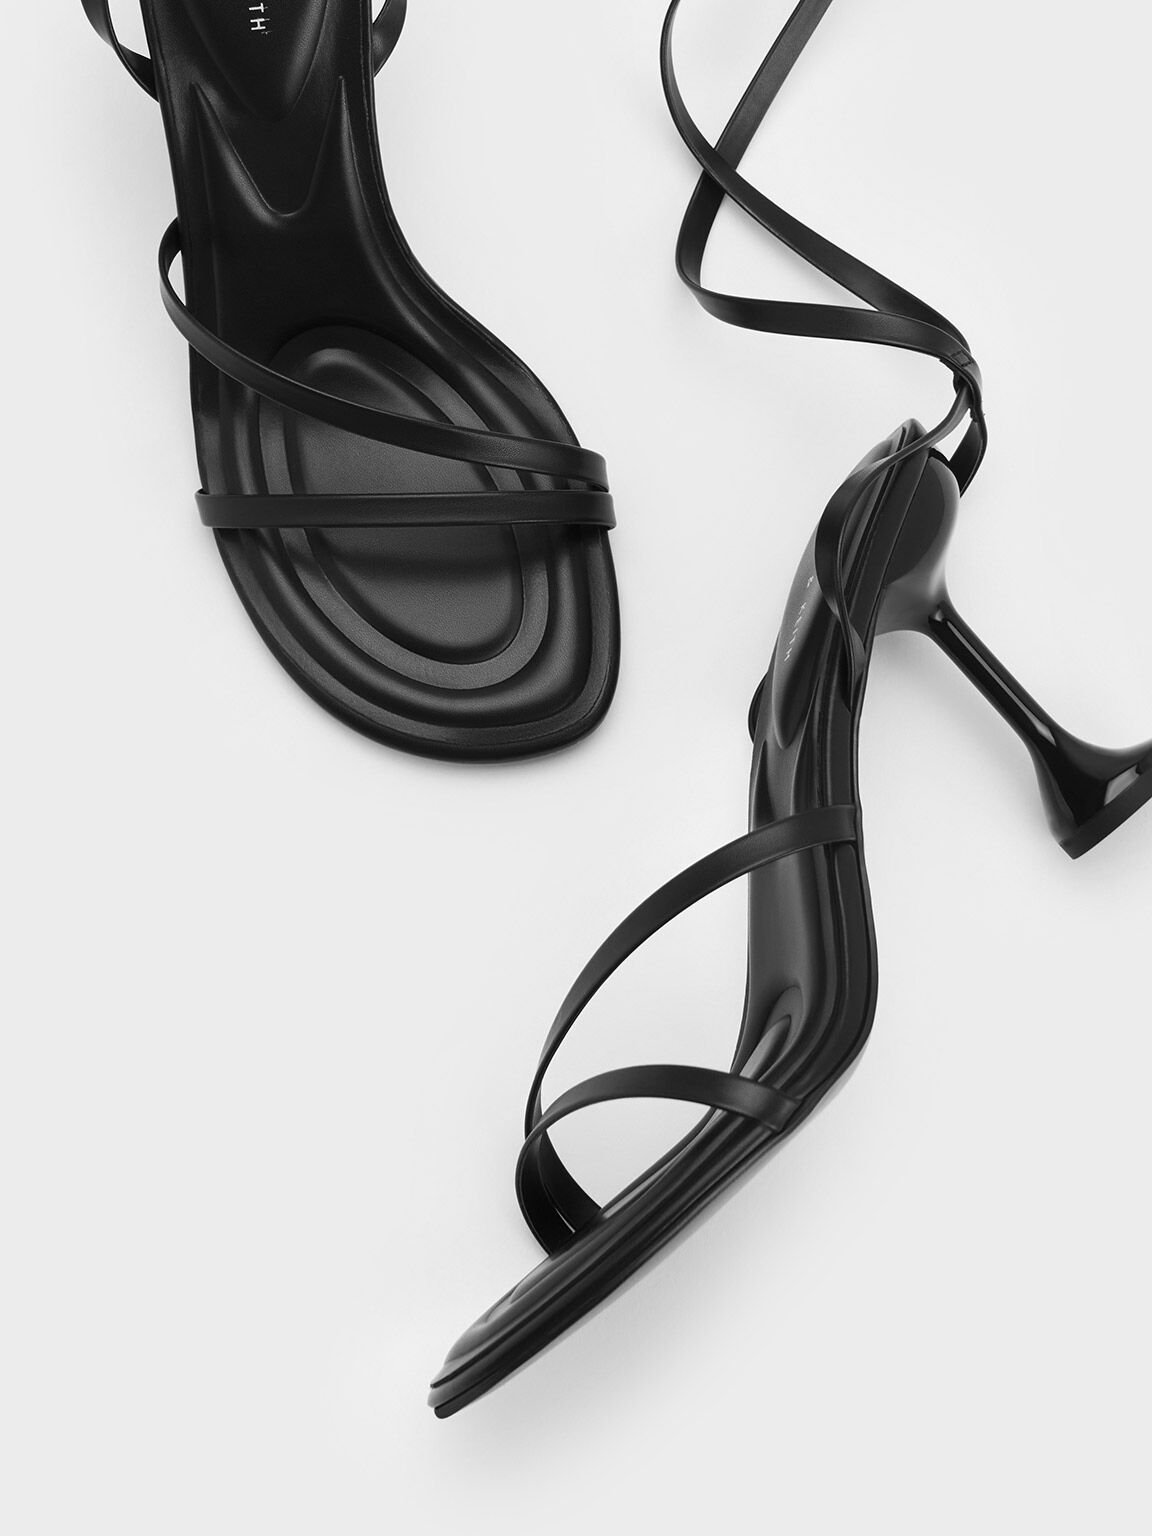 Celestine Sculptural Heel Strappy Sandals, Black, hi-res